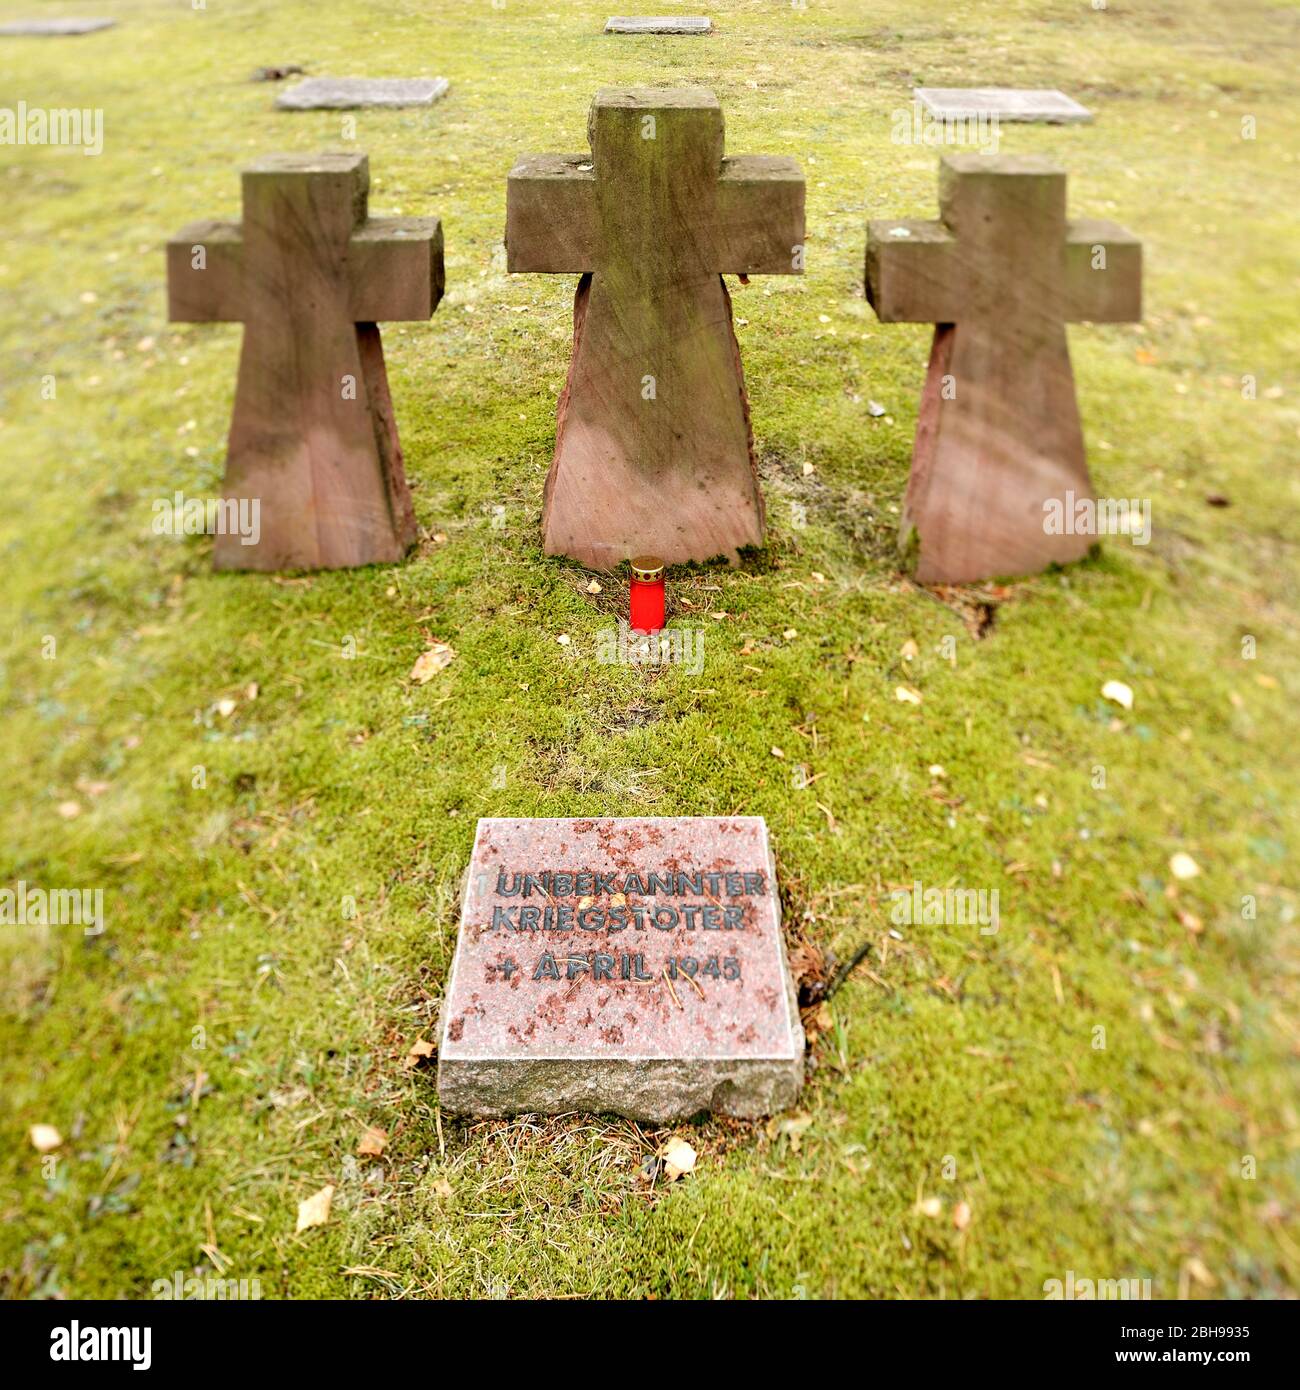 Waldfriedhof Halbe, cementerio militar, uno de los mayores sitios de tumbas de guerra de Alemania para 28,000 víctimas de la Segunda Guerra Mundial, losas y cruces de piedra, nitidez selectiva, Halbe, Brandenburgo, Alemania Foto de stock